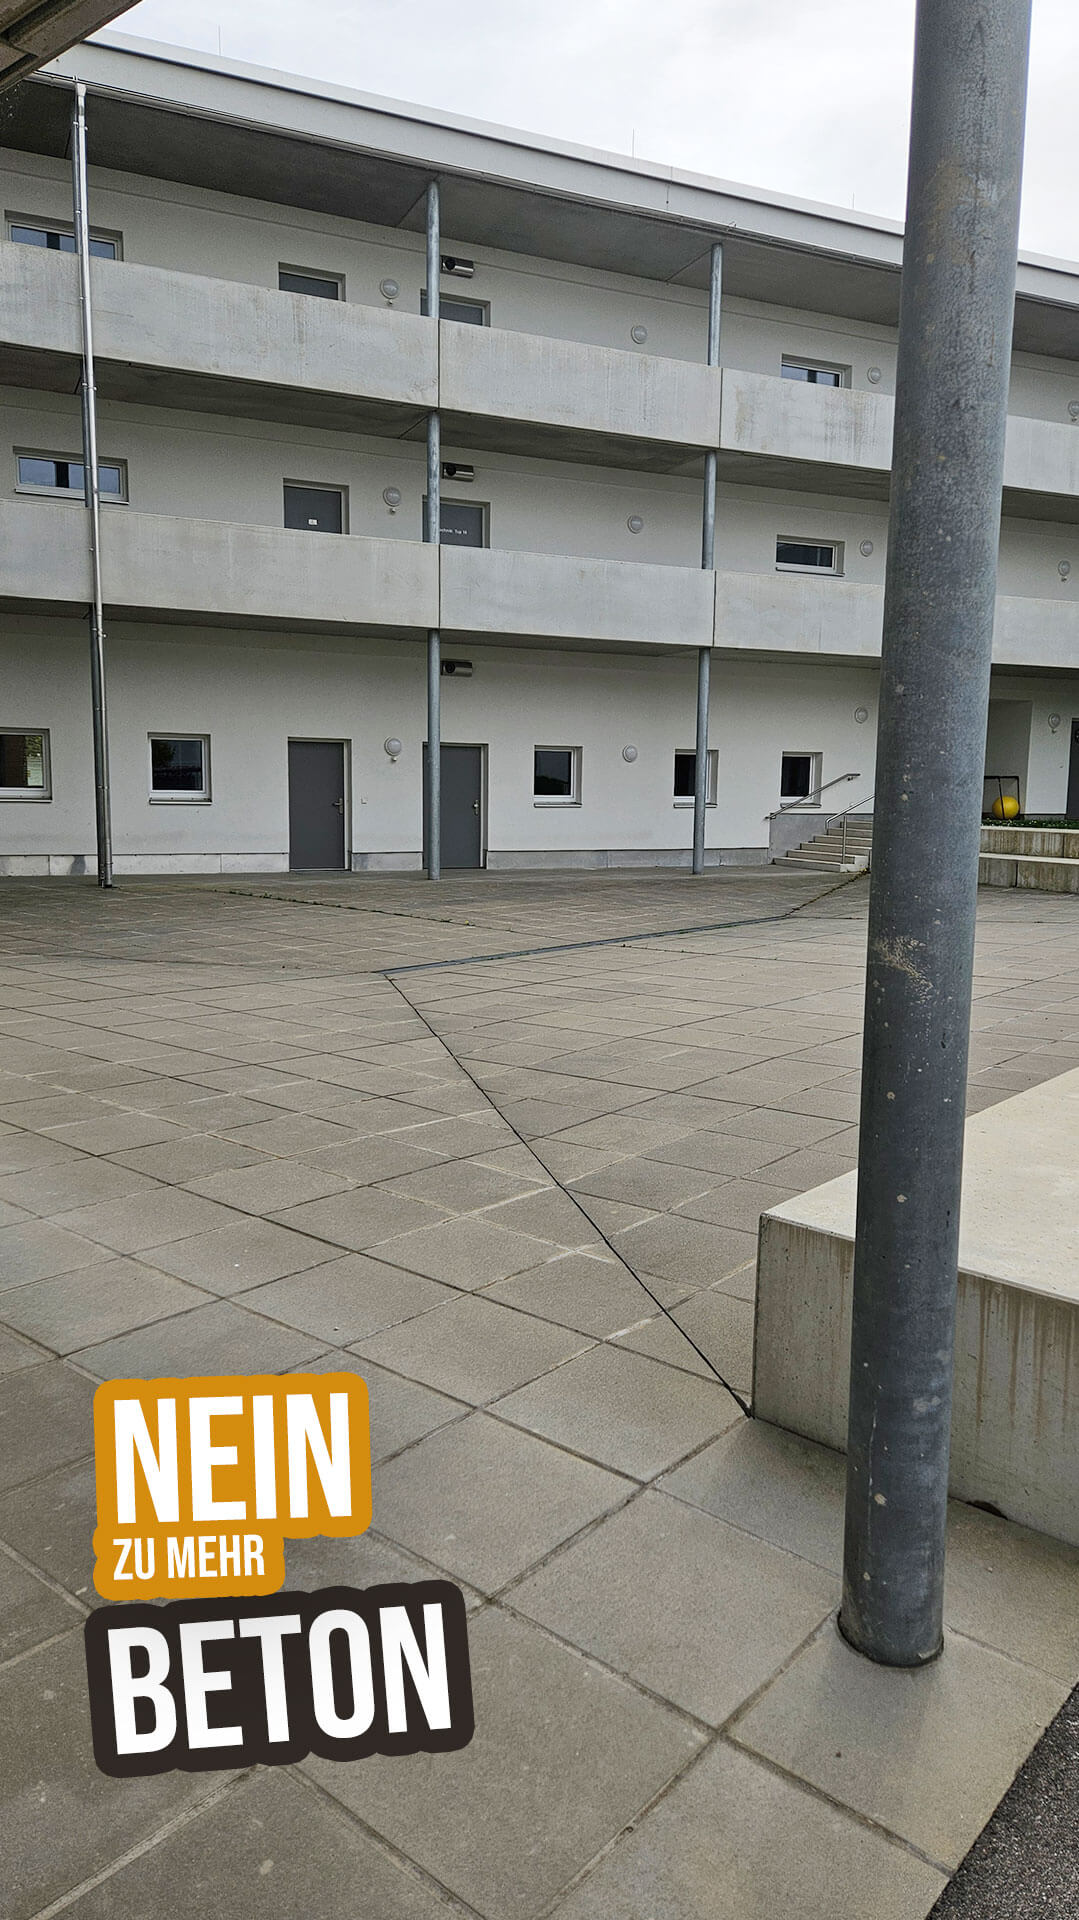 Petition Neuhofen an der Ybbs gegen Bodenversiegelung. Rettet die Grünflächen und Altbestand. Alte Volksschule.